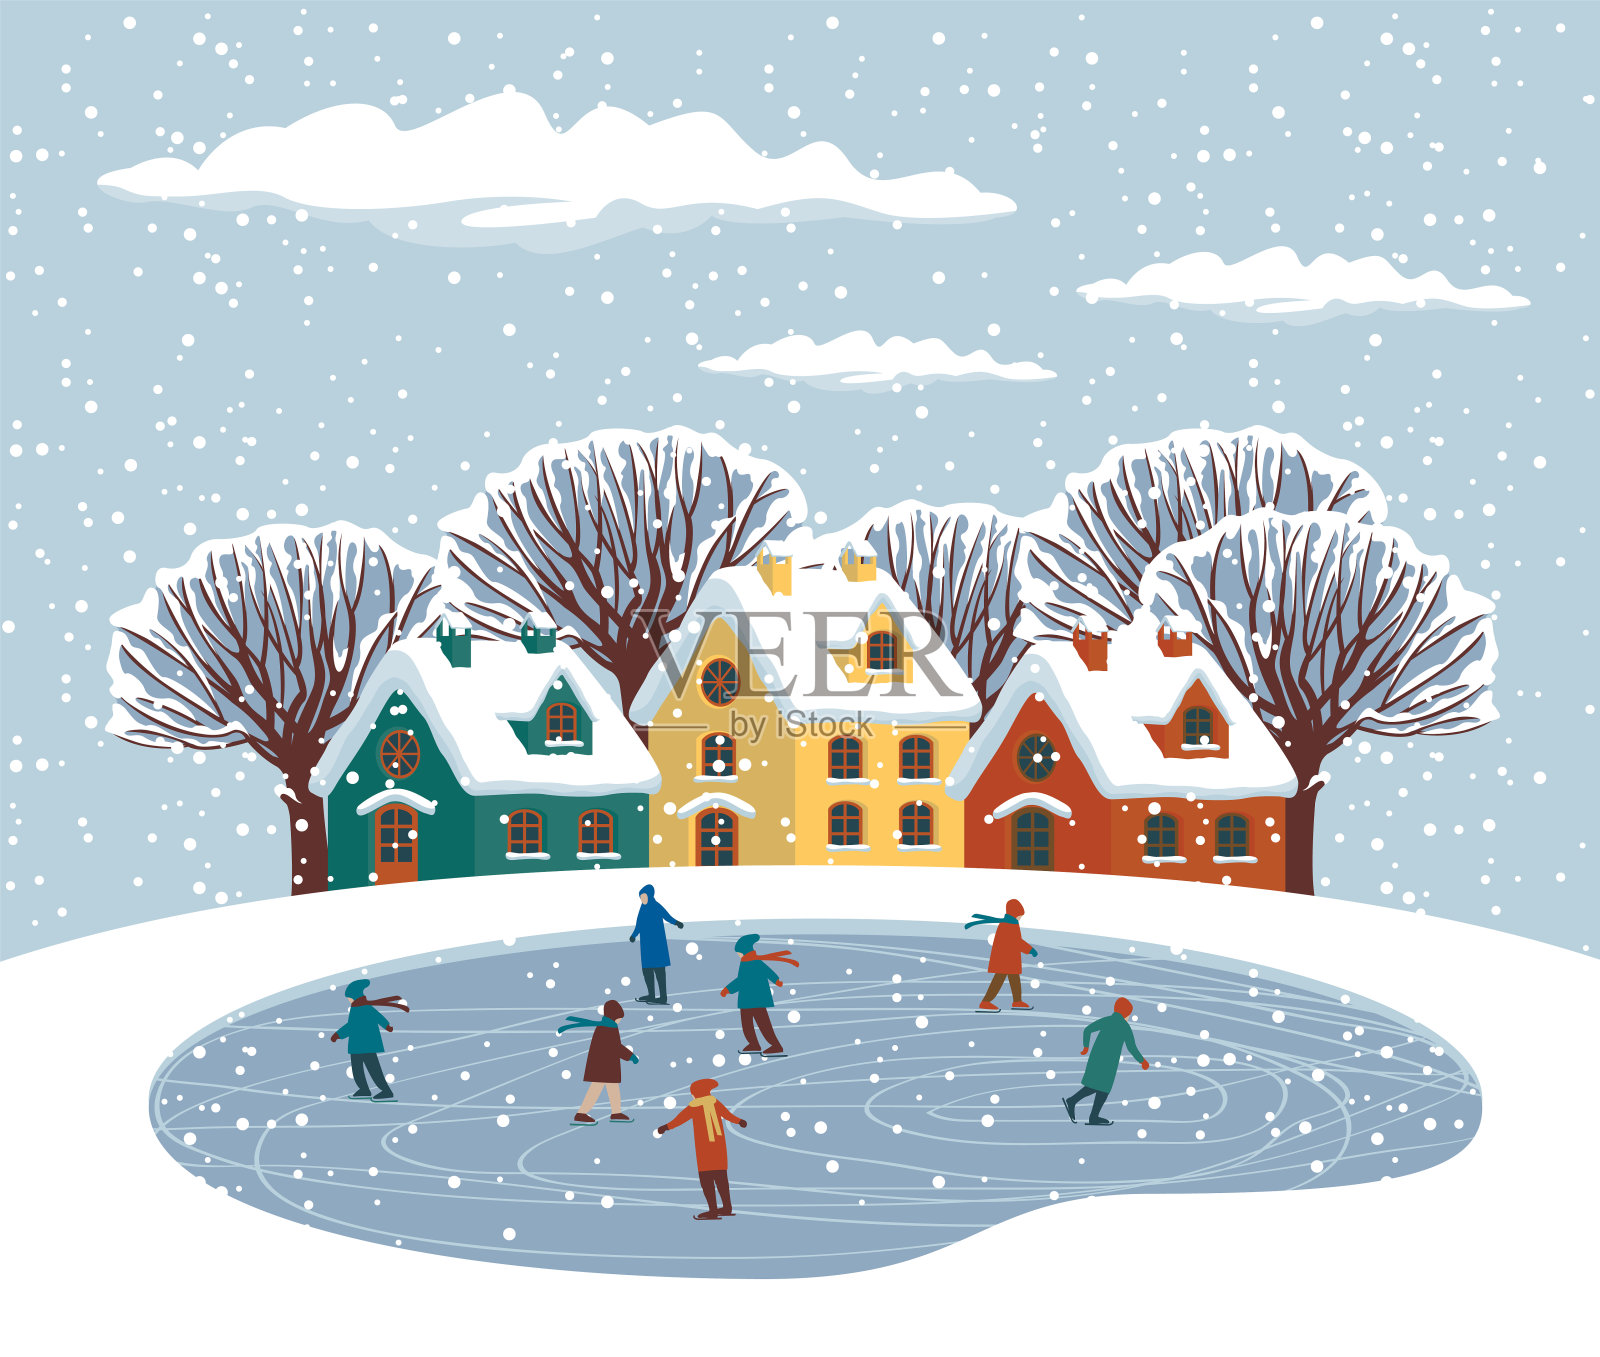 有可爱的房子和溜冰场的冬季景观插画图片素材